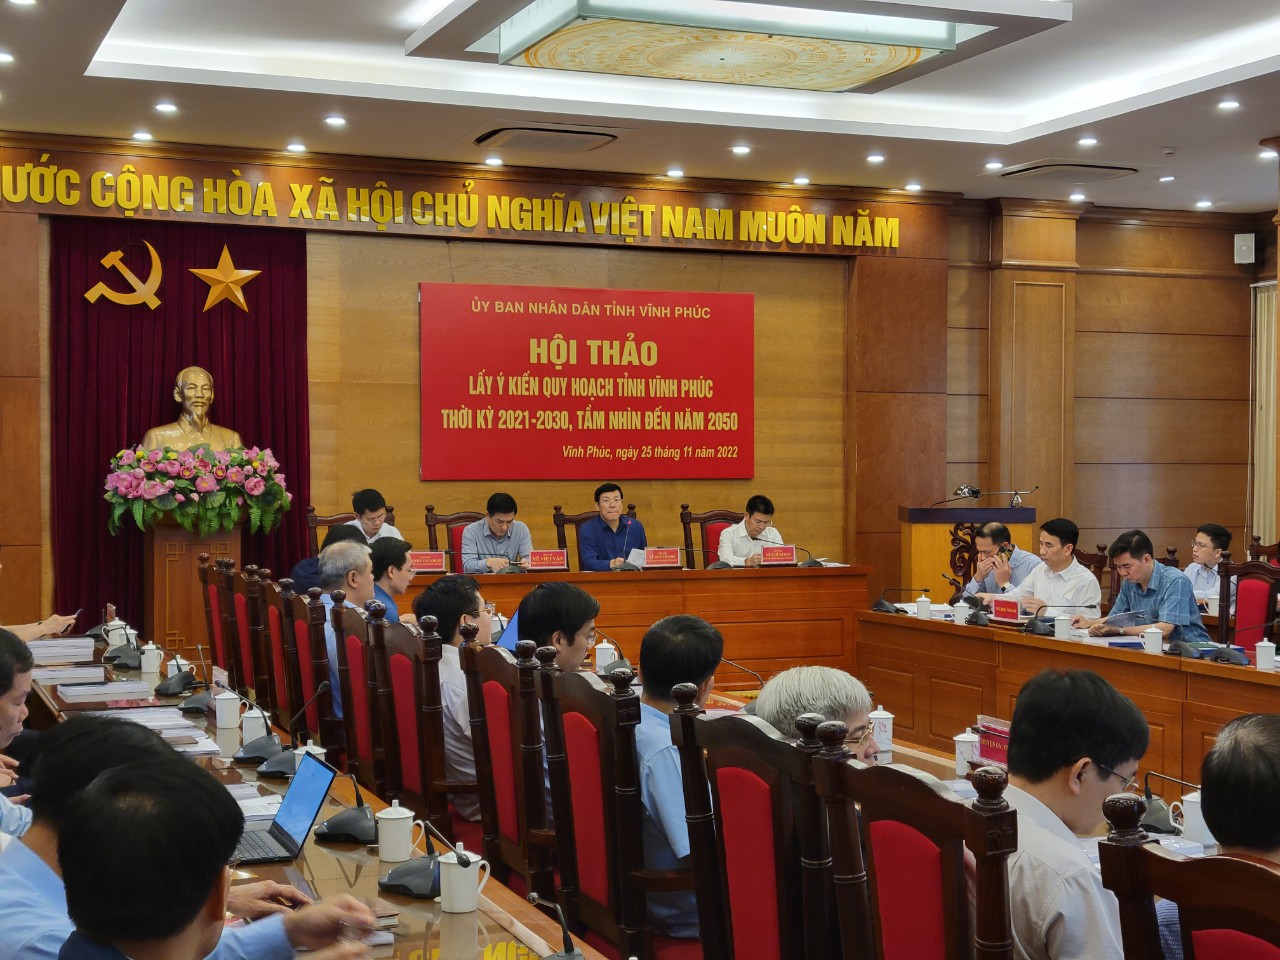 Chủ trì cuộc họp ông Lê Duy Thành – Phó bí thư tỉnh ủy, Chủ tịch UBND tỉnh Vĩnh Phúc